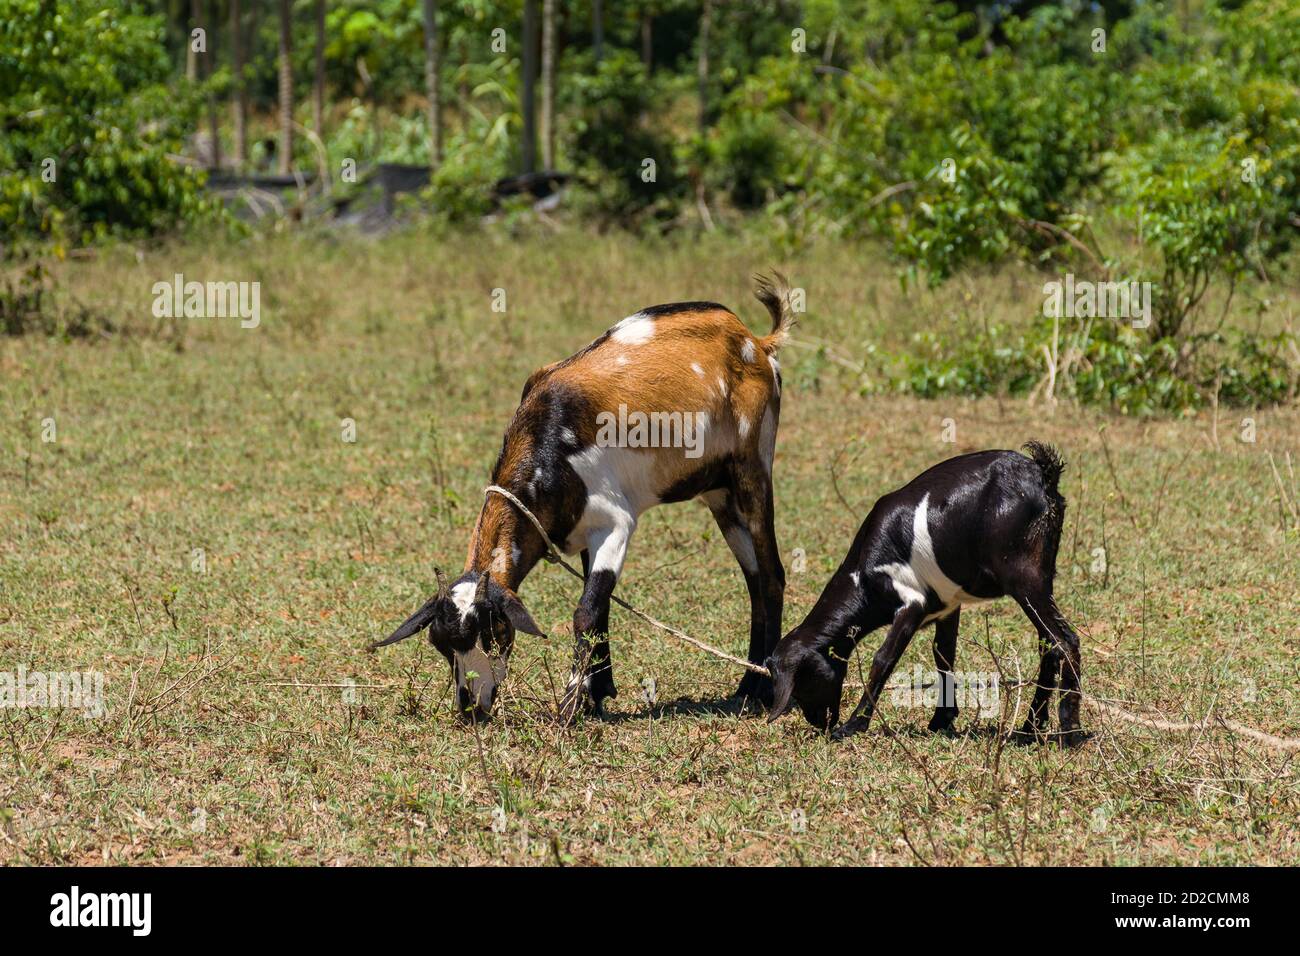 Chèvres (Capra aegagrus hircus) avec laisse de corde sur herbe courte, Kenya Banque D'Images